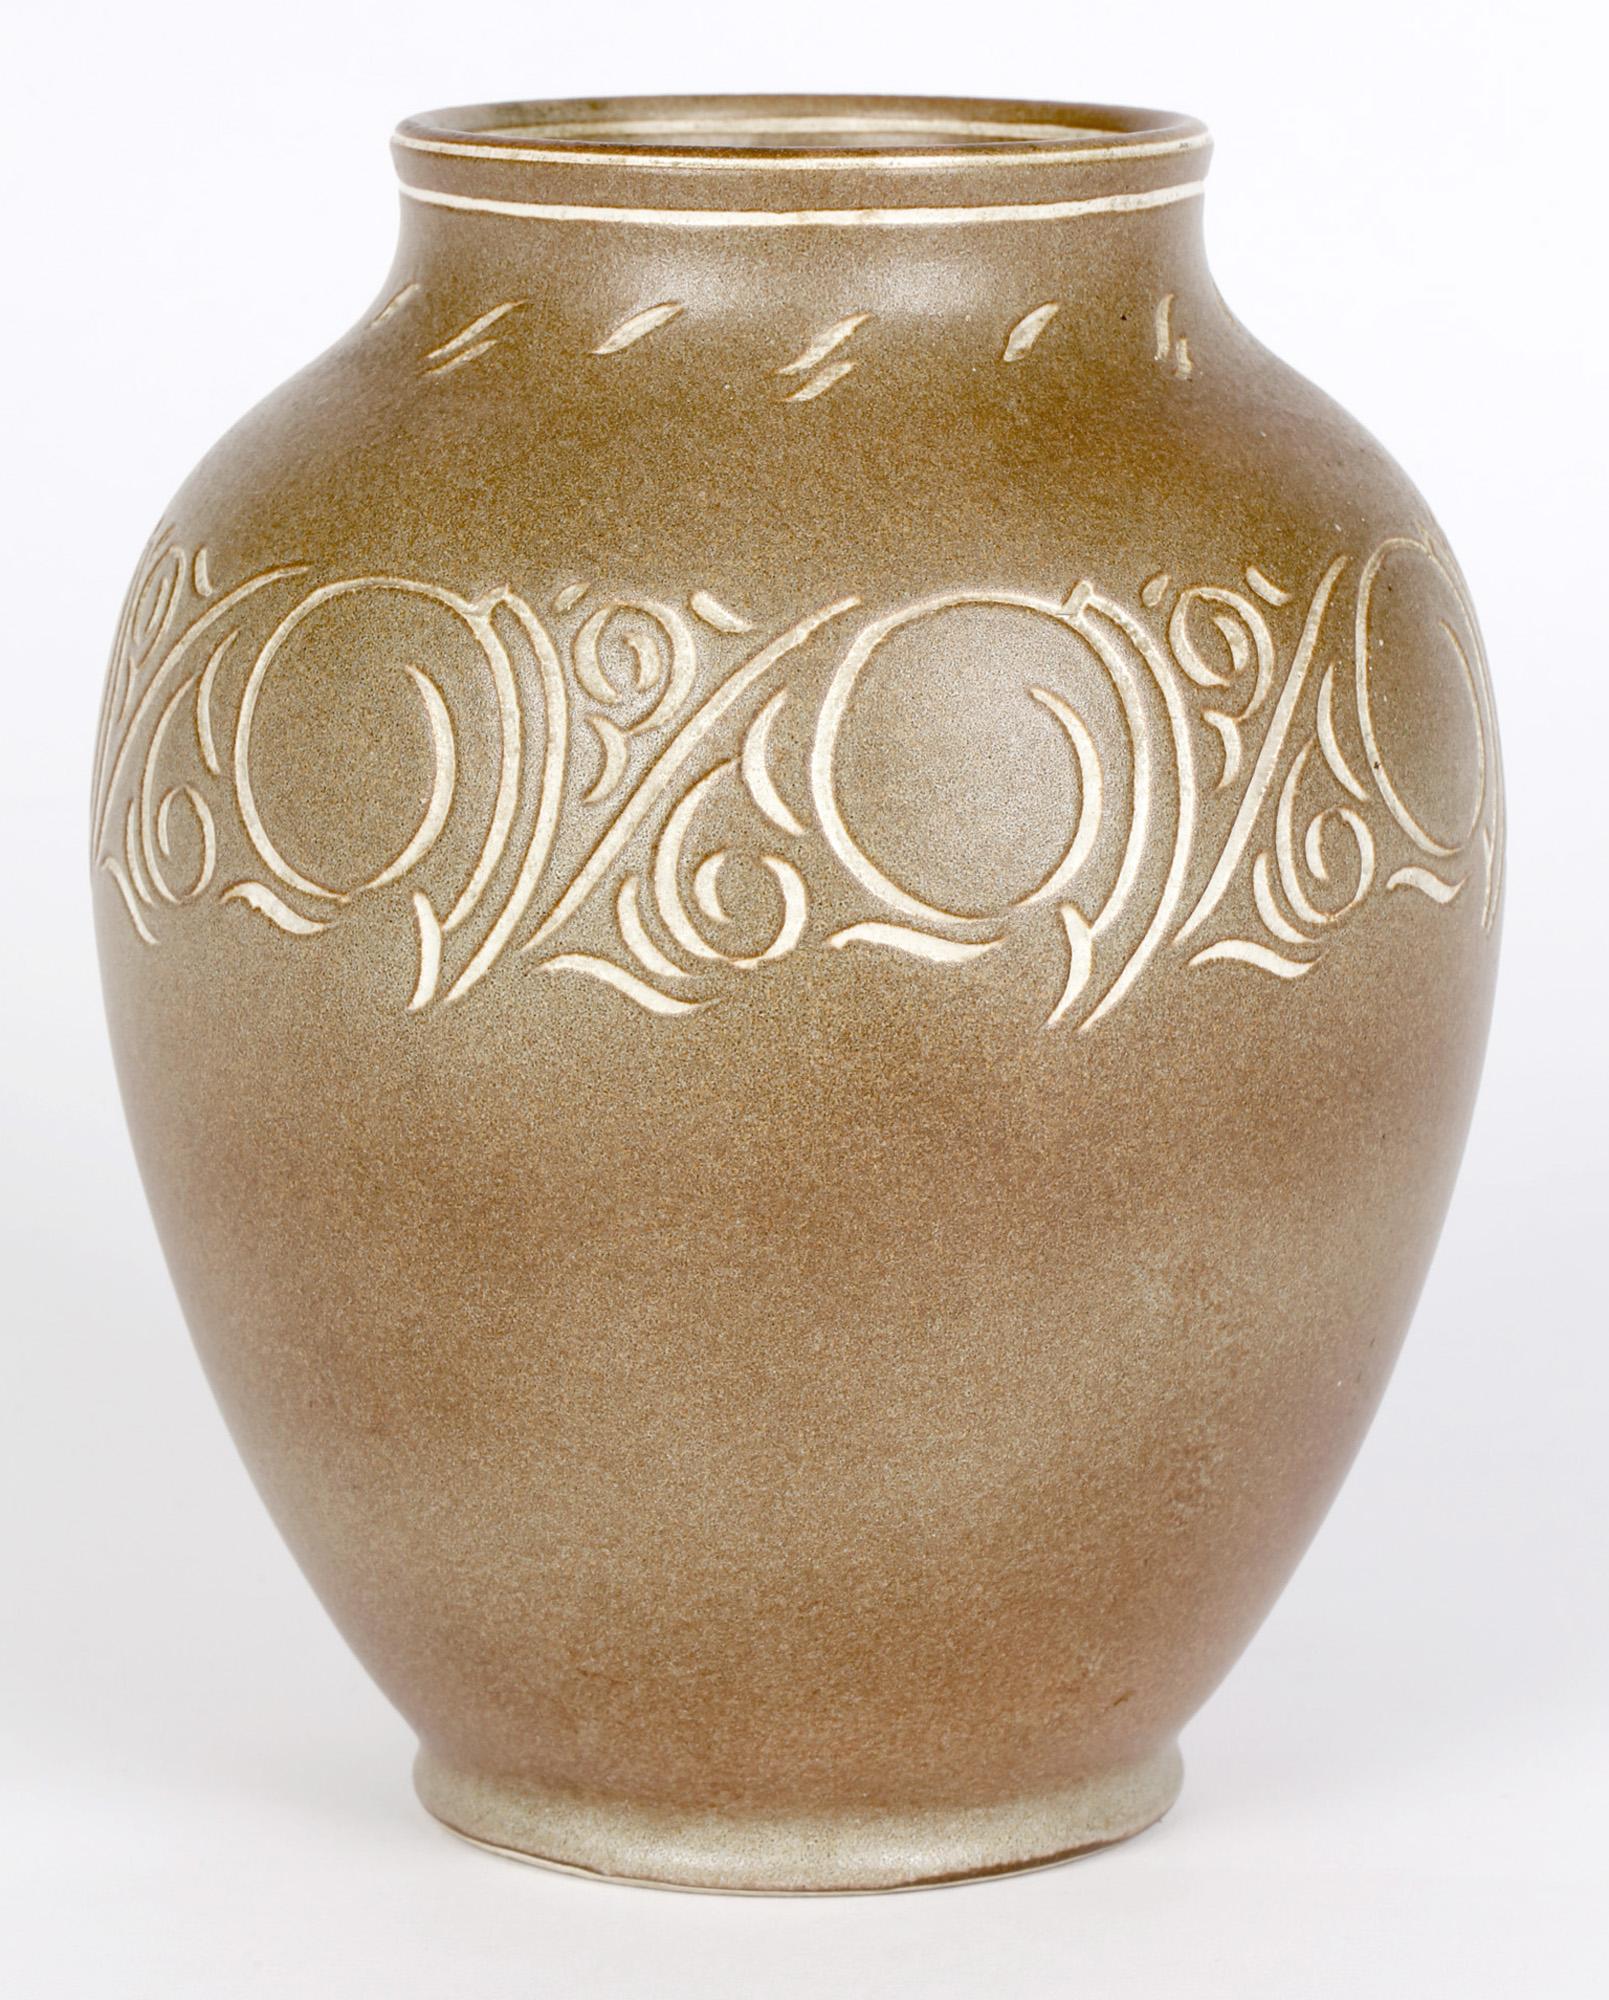 Élégant vase en grès anglais du milieu du siècle, à glaçage brun et motif incisé, fabriqué par Pearsons de Chesterfield et datant d'environ 1960. Le vase bulbeux arrondi, fabriqué à partir d'une argile de couleur blanche, présente un motif abstrait